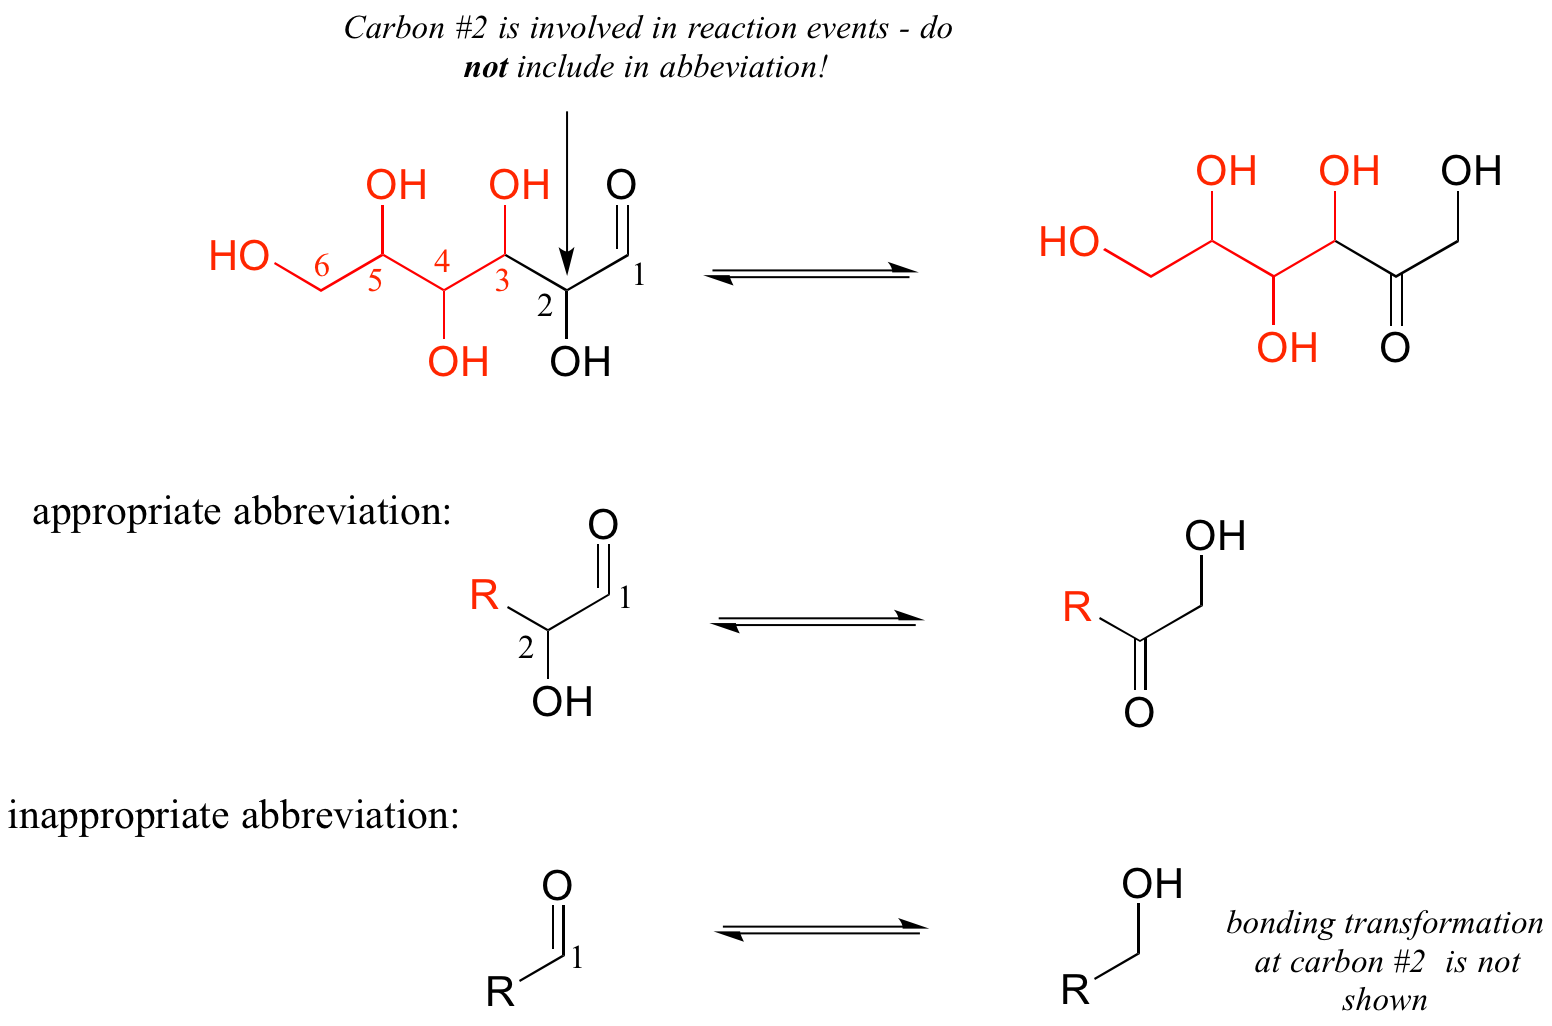 Reacción de una cadena de seis carbonos con cinco grupos hidroxi y un grupo carbonilo. Parte de la molécula involucrada en la abreviatura R coloreada de rojo. El carbono #2 está involucrado en eventos de reacción por lo que no se incluye en abreviatura. Abreviatura apropiada: carbono 2 no está involucrado en abreviatura. Abreviatura inapropiada: carbono 2 en abreviatura R. La transformación de unión al carbono #2 no se muestra en el ejemplo de abreviatura inapropiado.